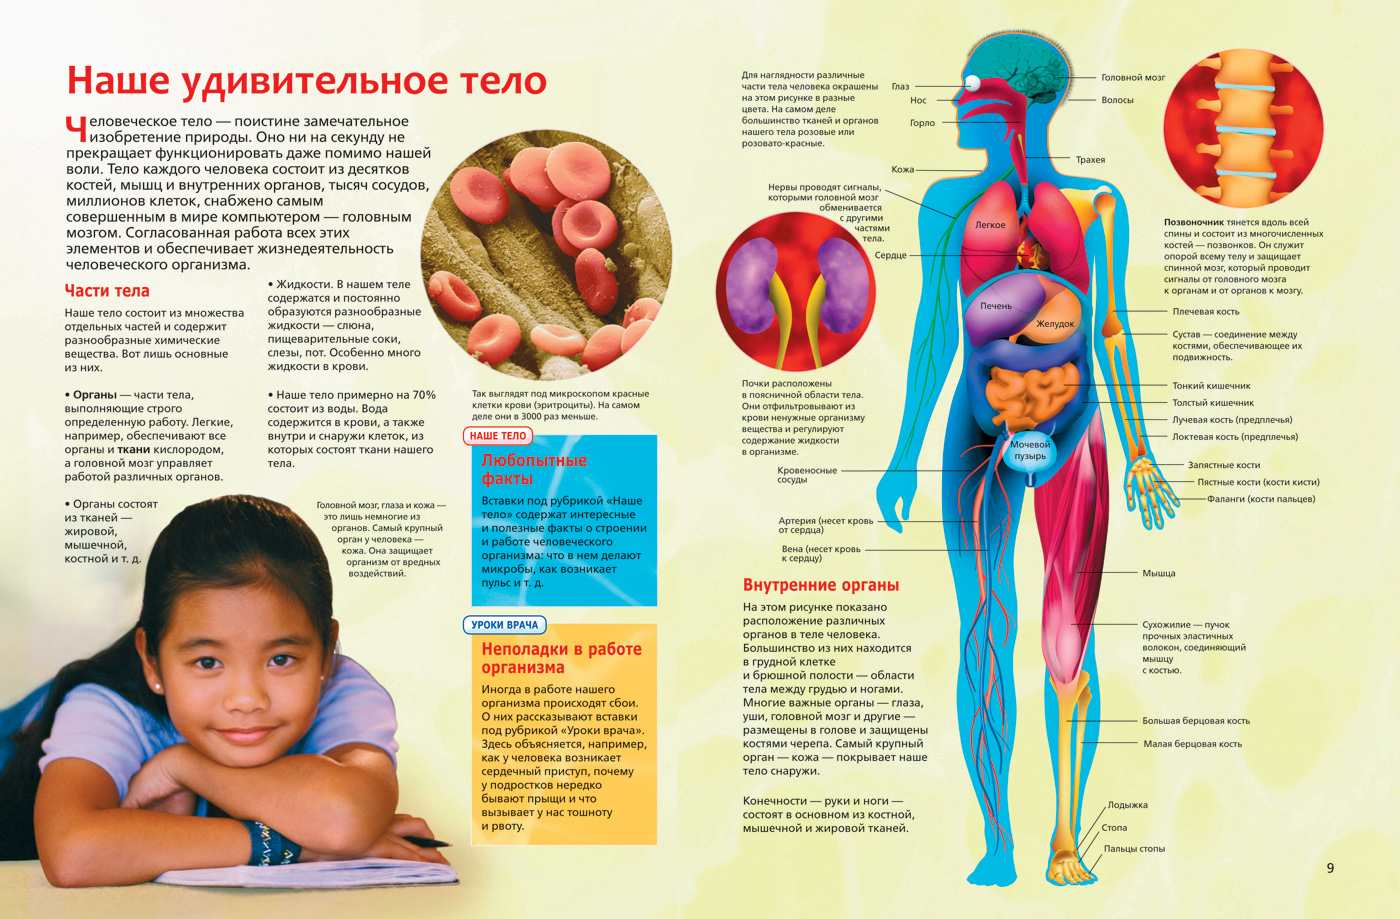 Любой орган в организме. Интересные сведения о человеческом теле. Анатомия человека. Интересные факты об органах человека. Анатомия человека для детей.